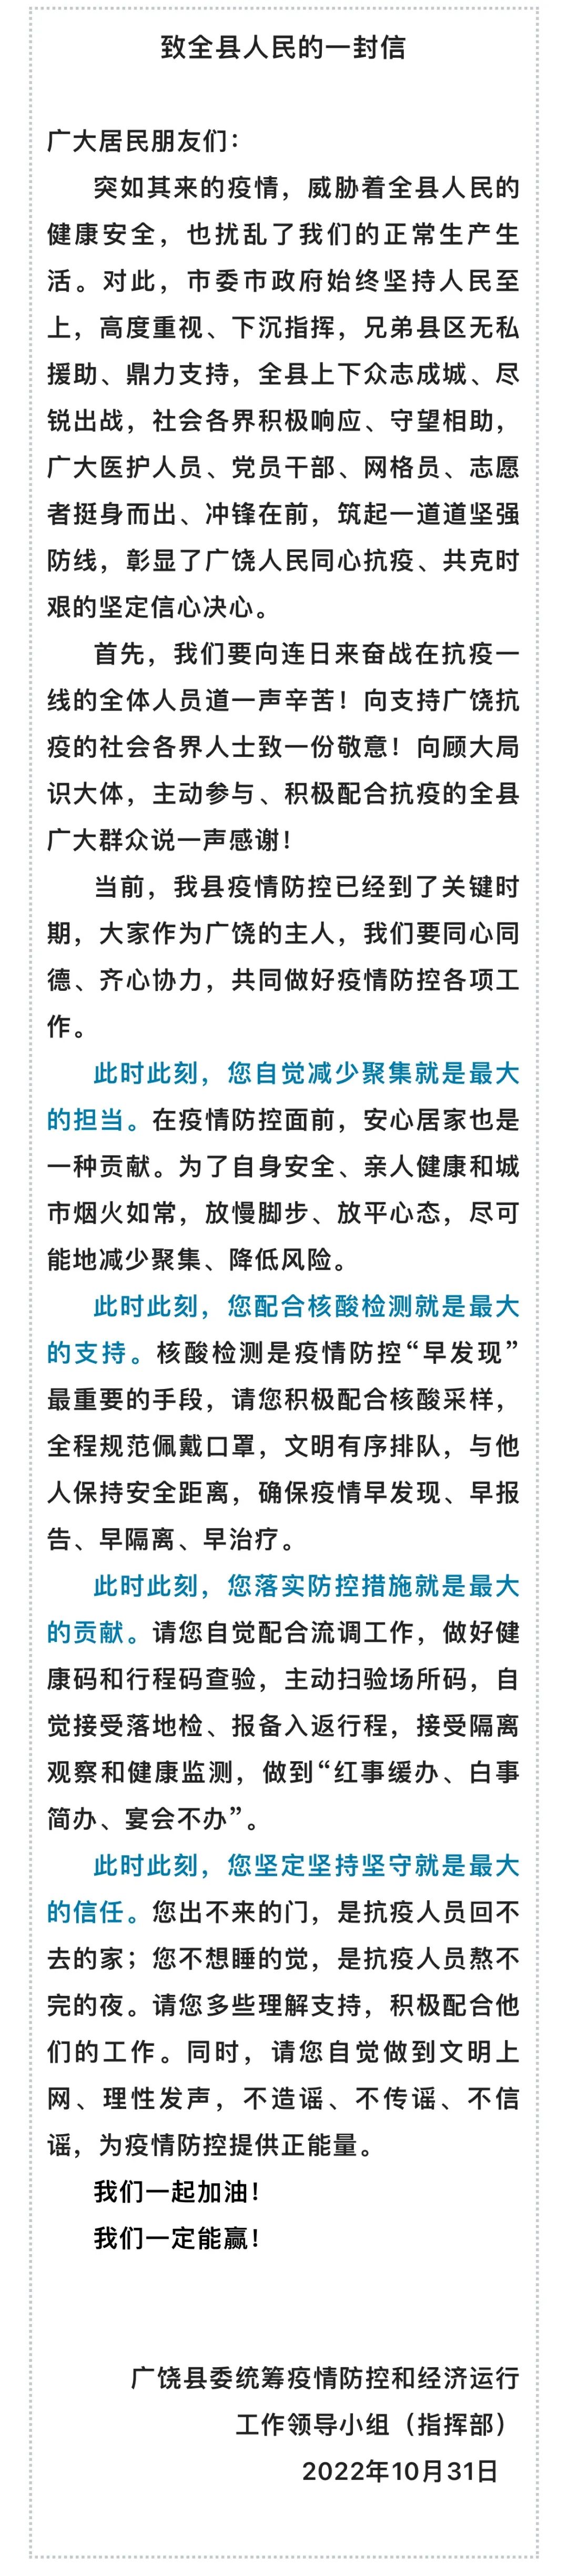 广饶县委统筹疫情防控和经济运行工作领导小组也发布了——致全县人民的一封信。